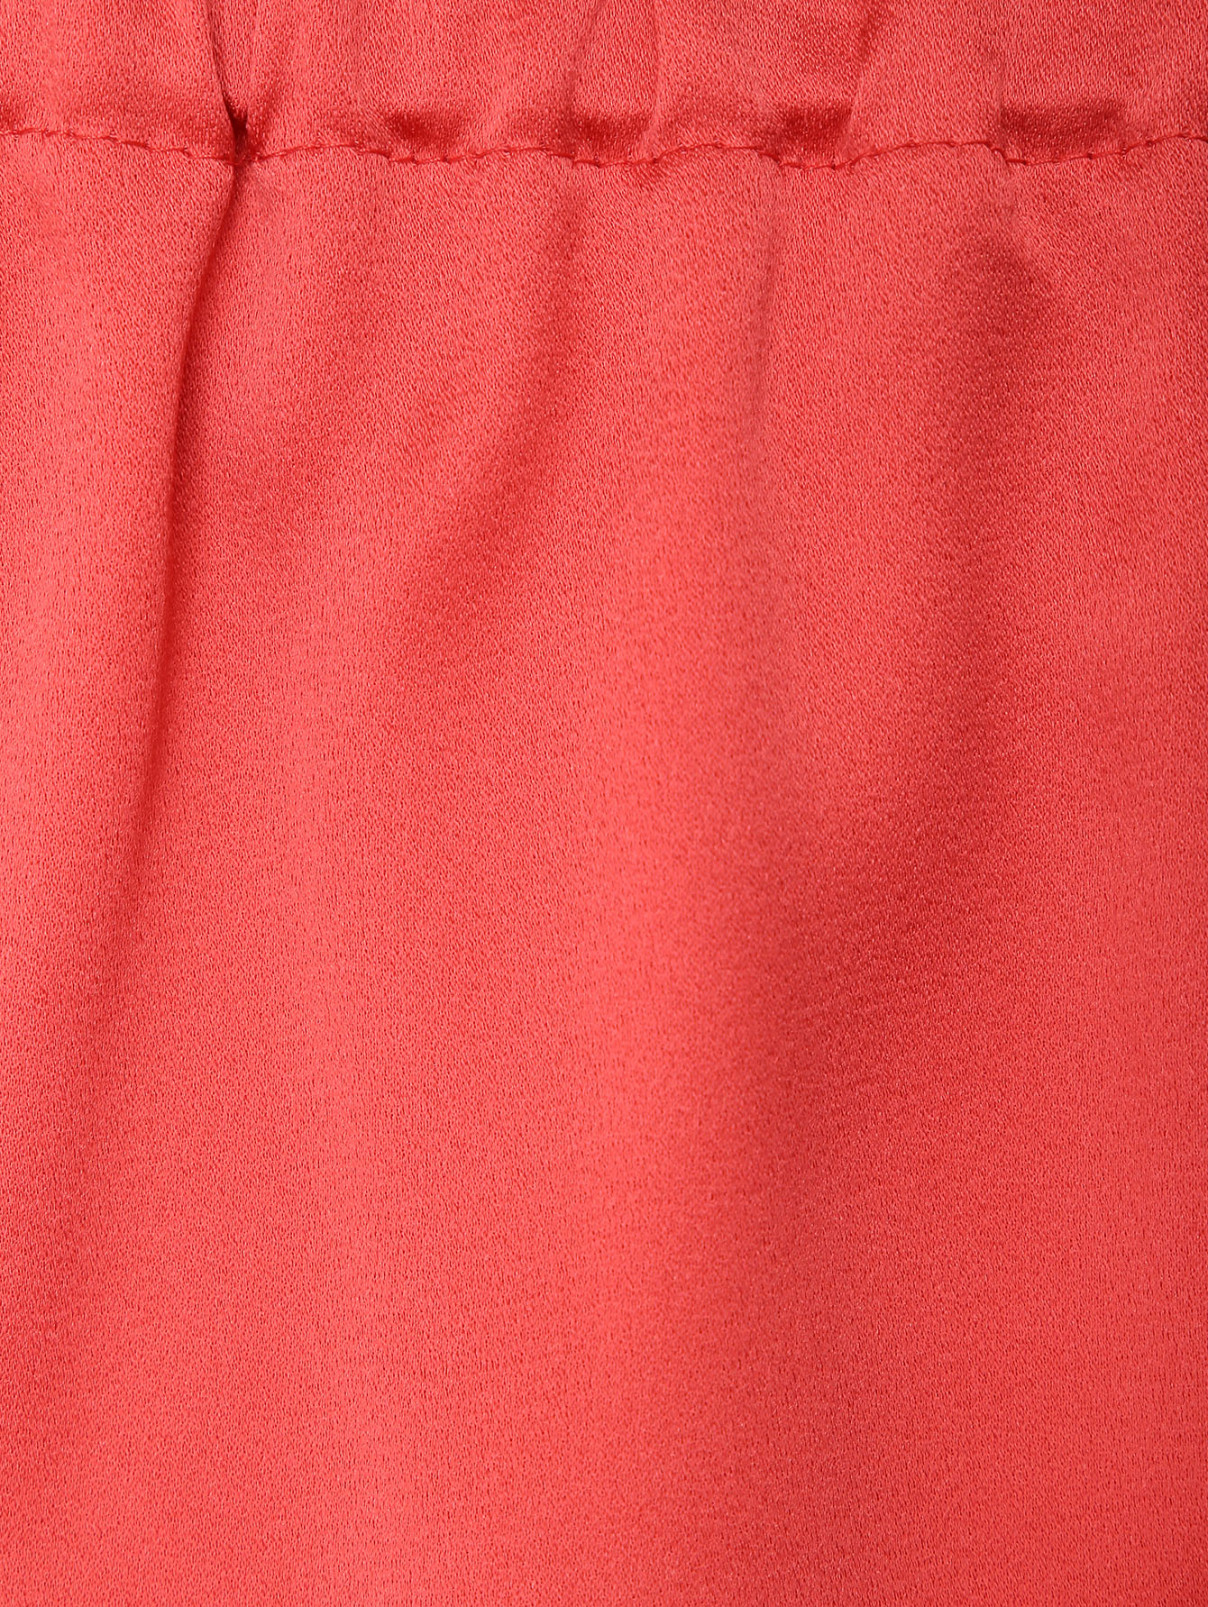 Однотонные брюки на резинке Marina Rinaldi  –  Деталь1  – Цвет:  Оранжевый